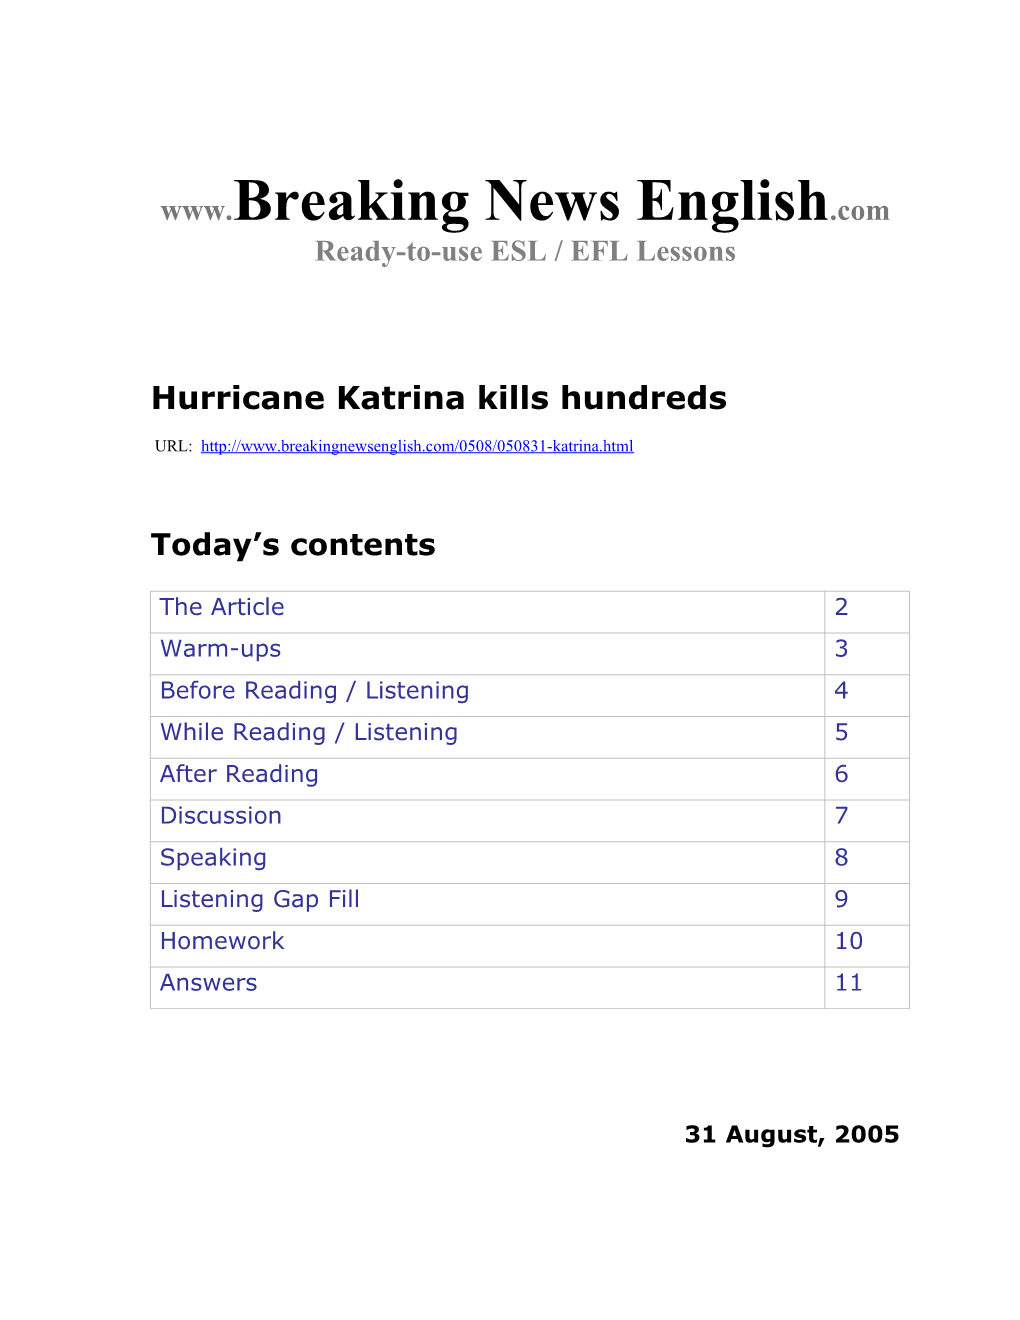 Hurricane Katrina Kills Hundreds